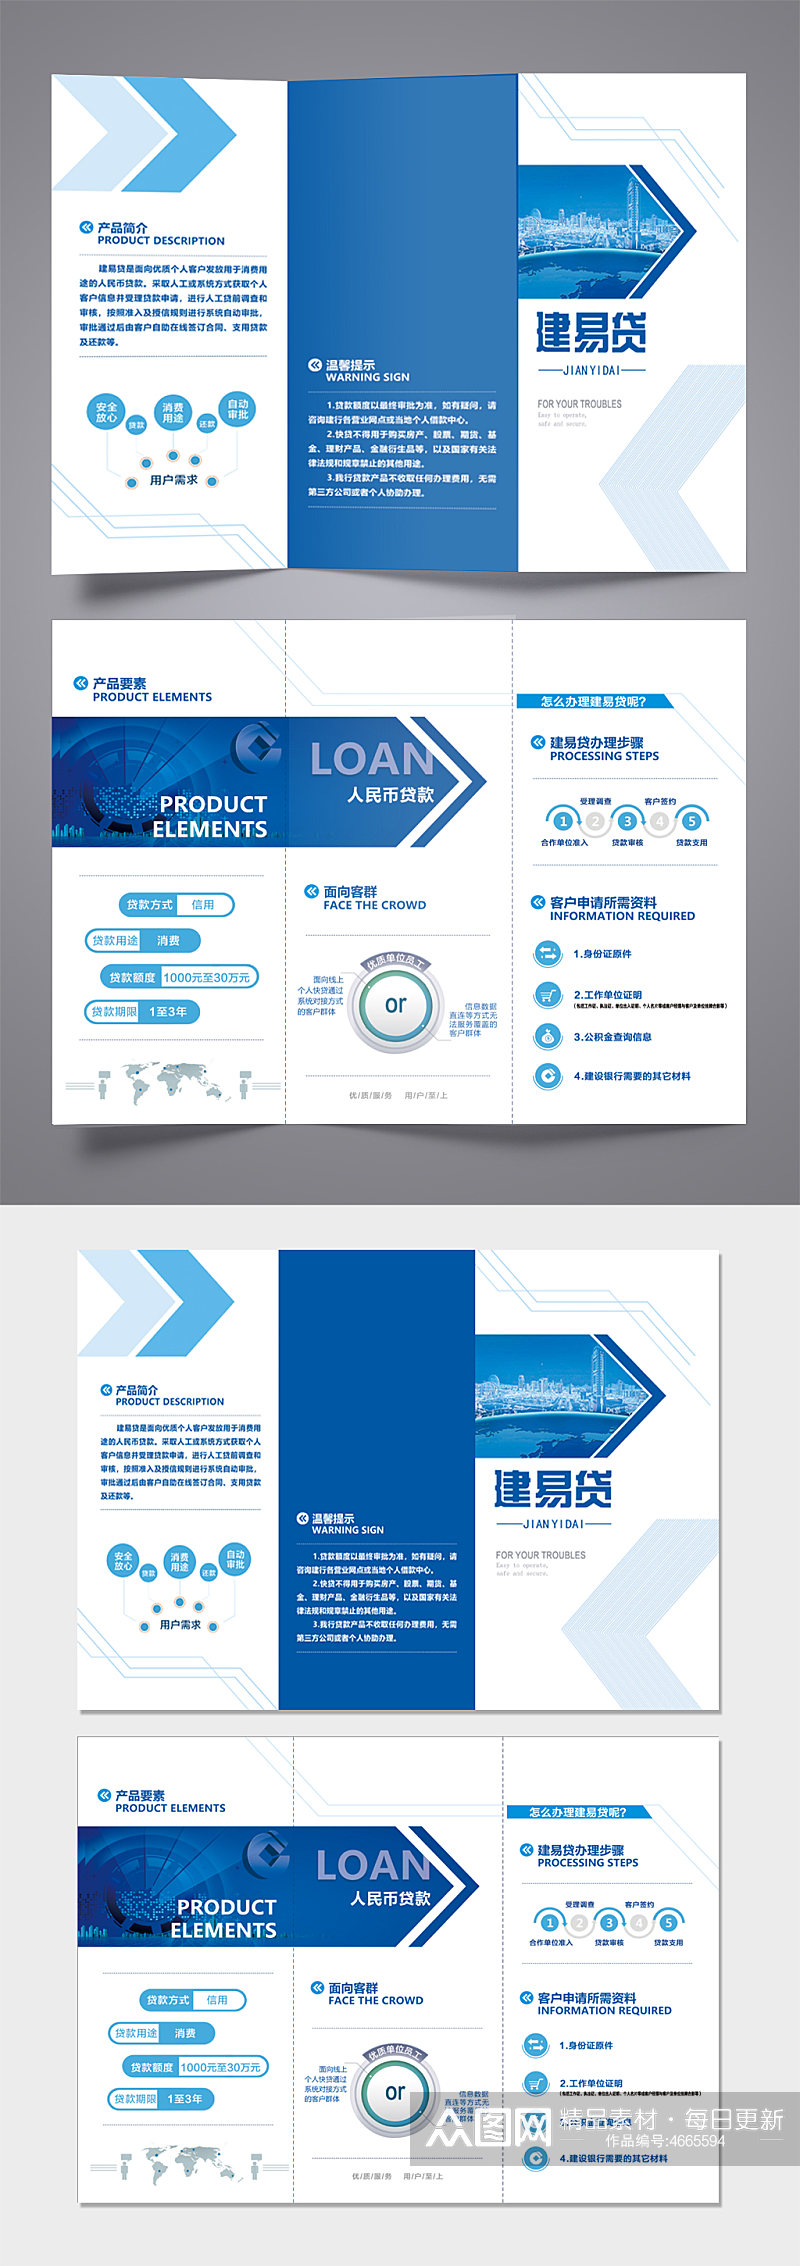 蓝色企业贷款三折页素材